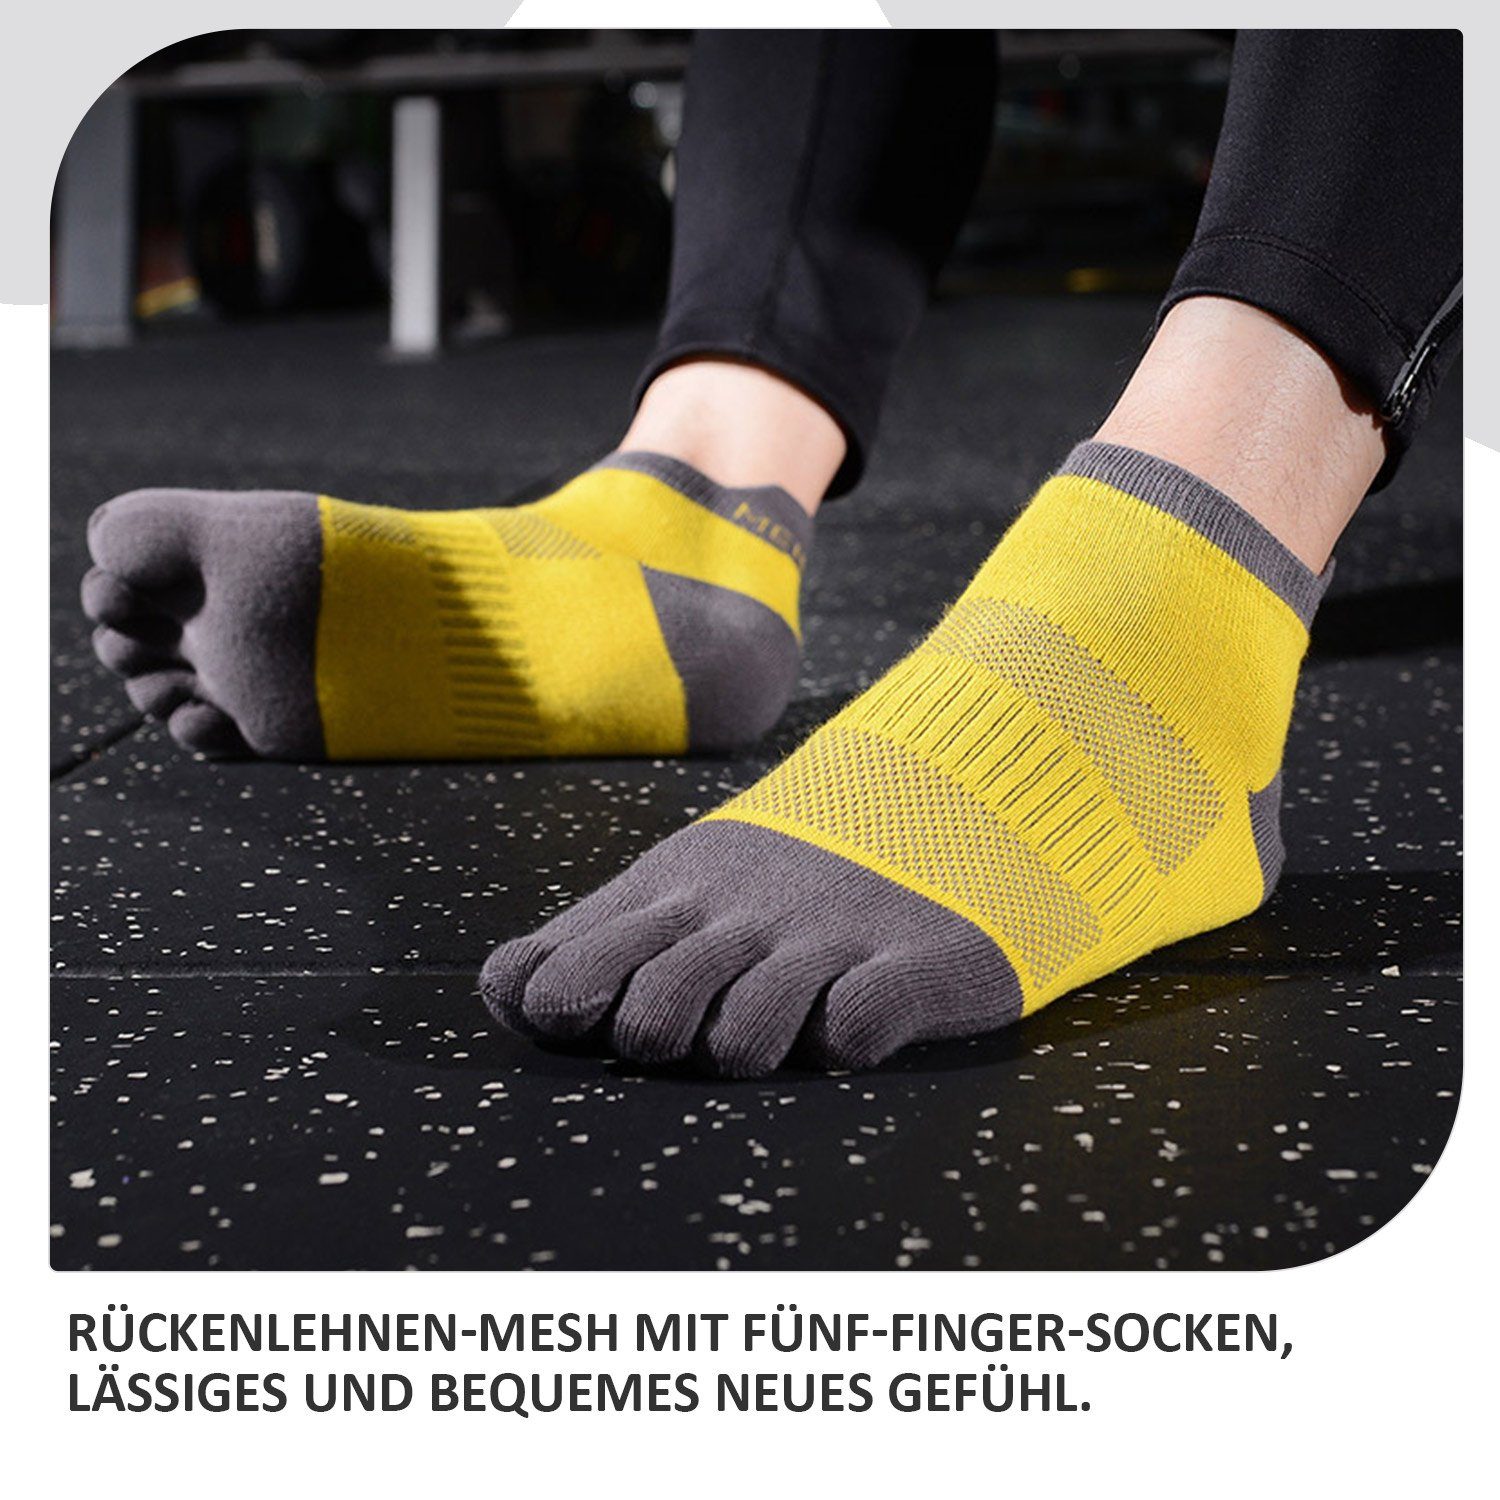 2 Sportsocke Grau zehenfreie Gelb Paare Daisred Socken Zehensocken + Paw 38-43 Toe